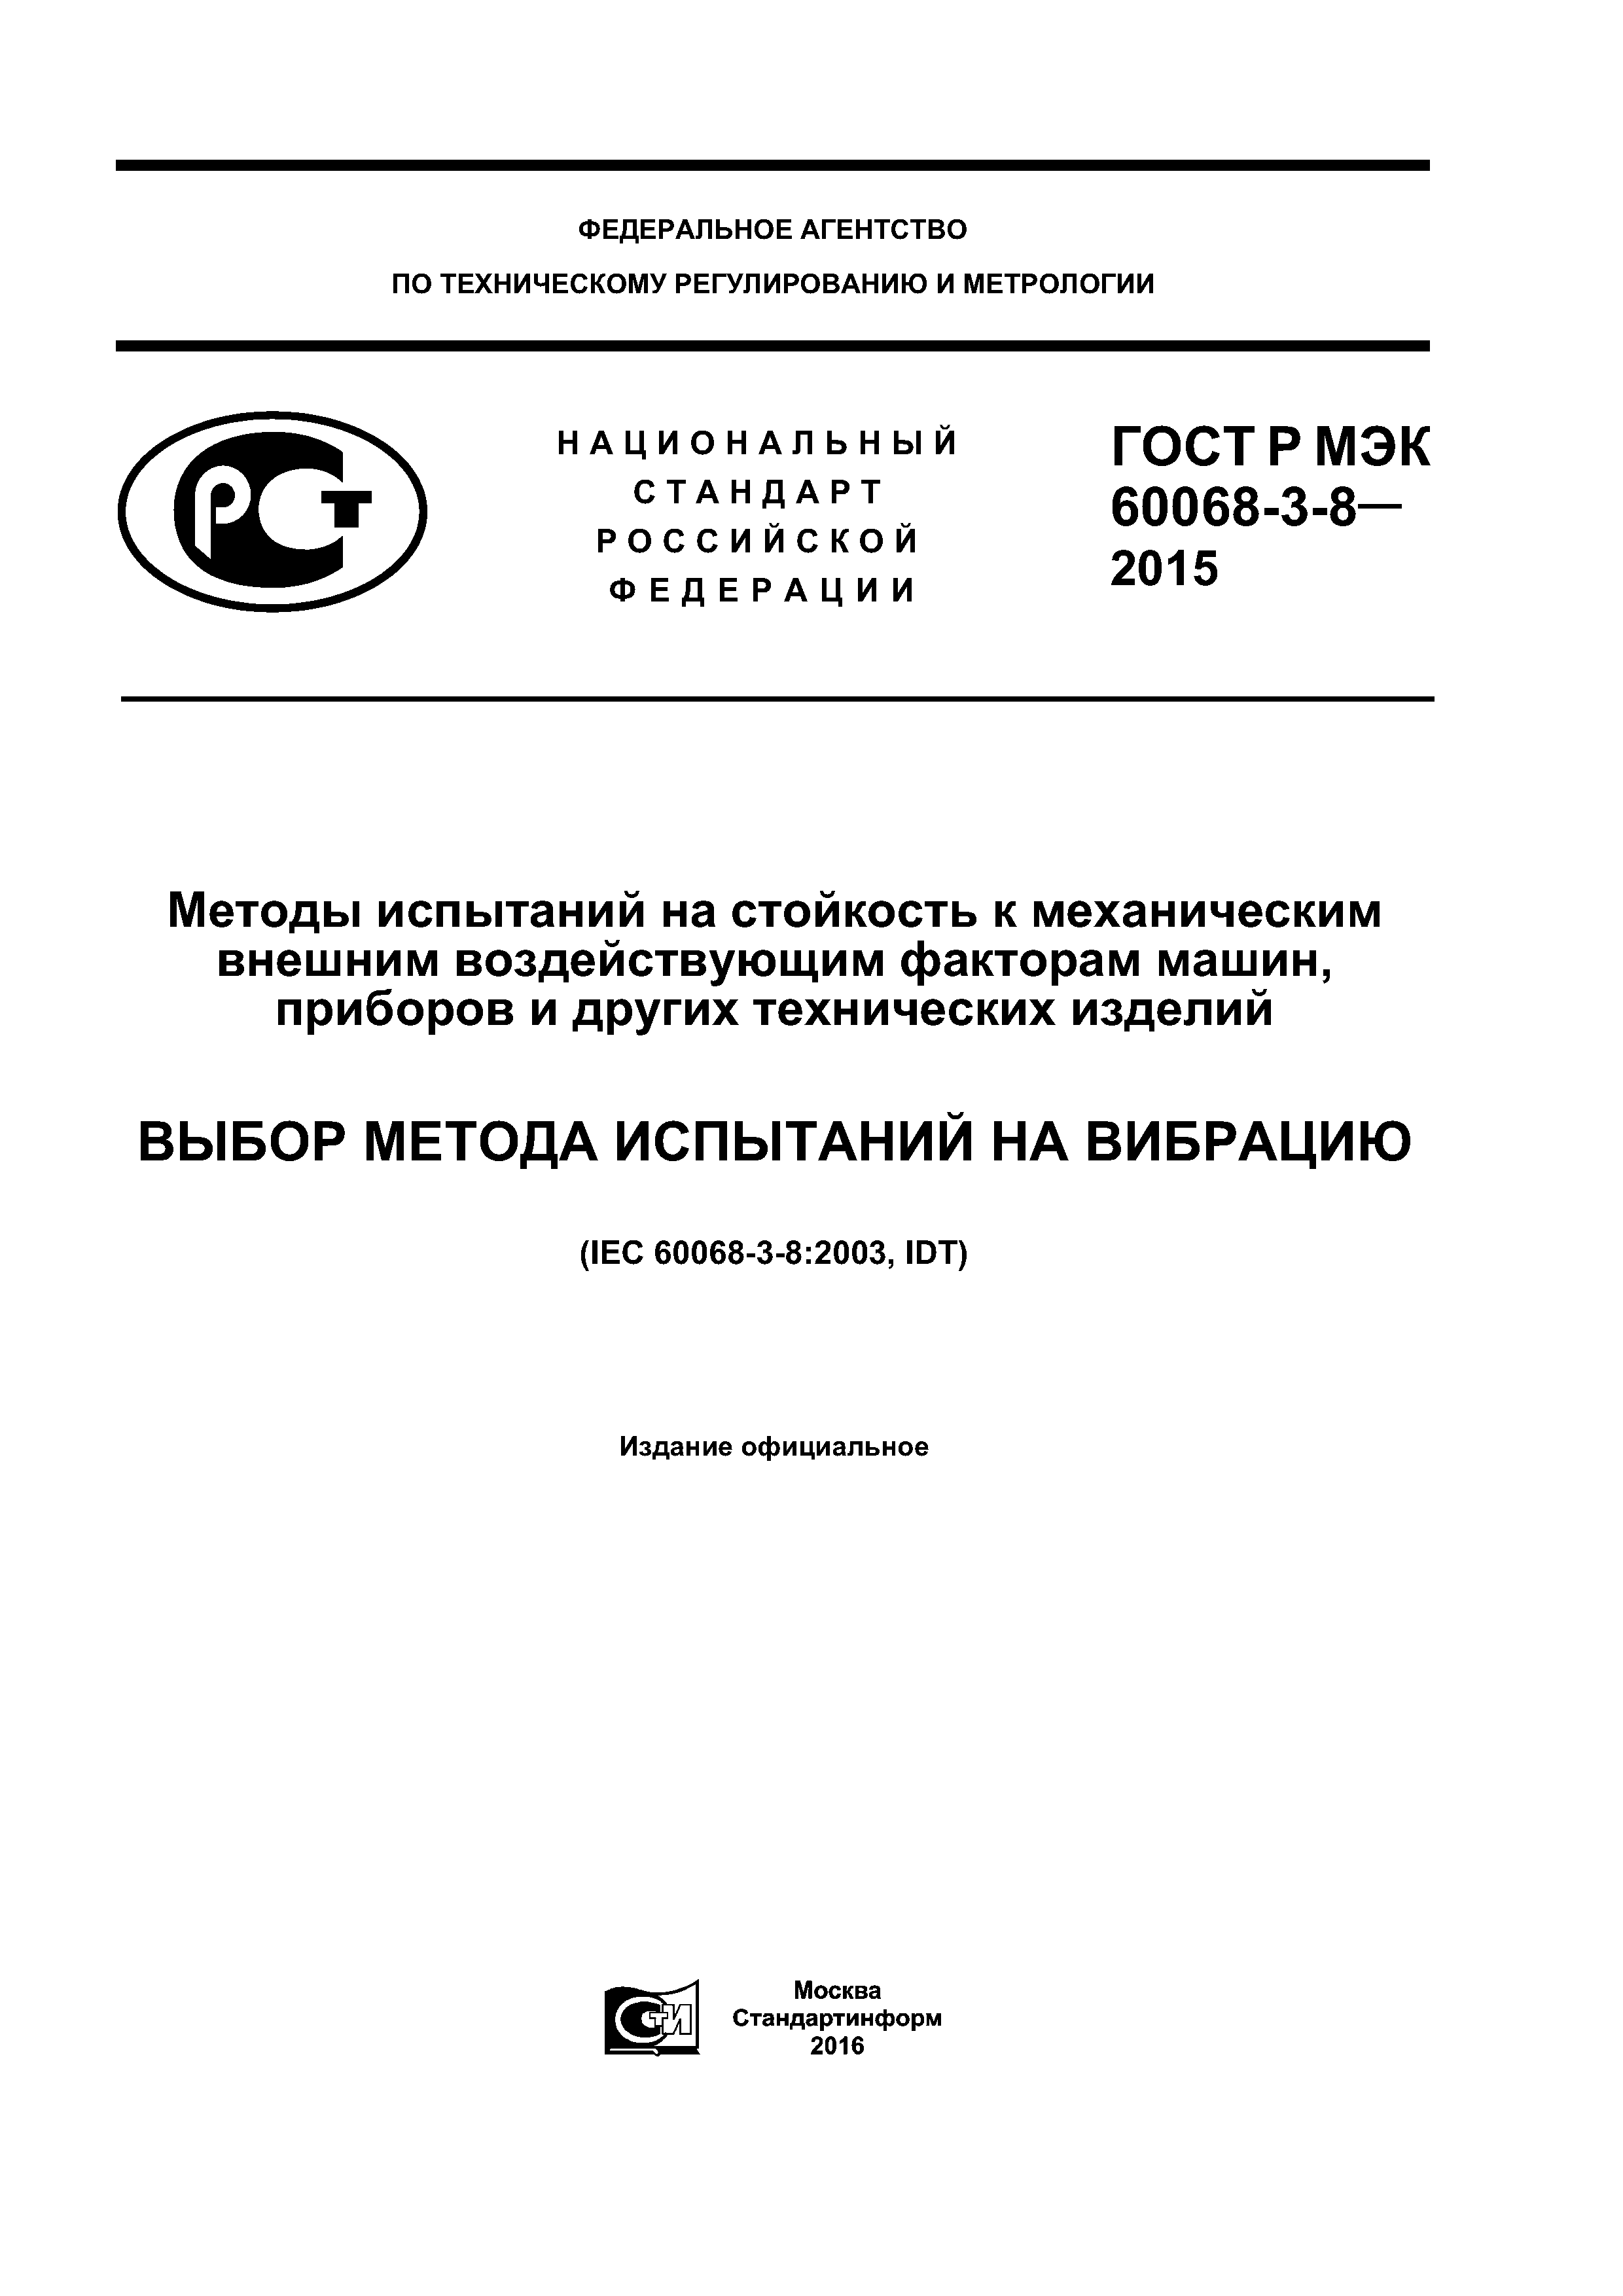 ГОСТ Р МЭК 60068-3-8-2015